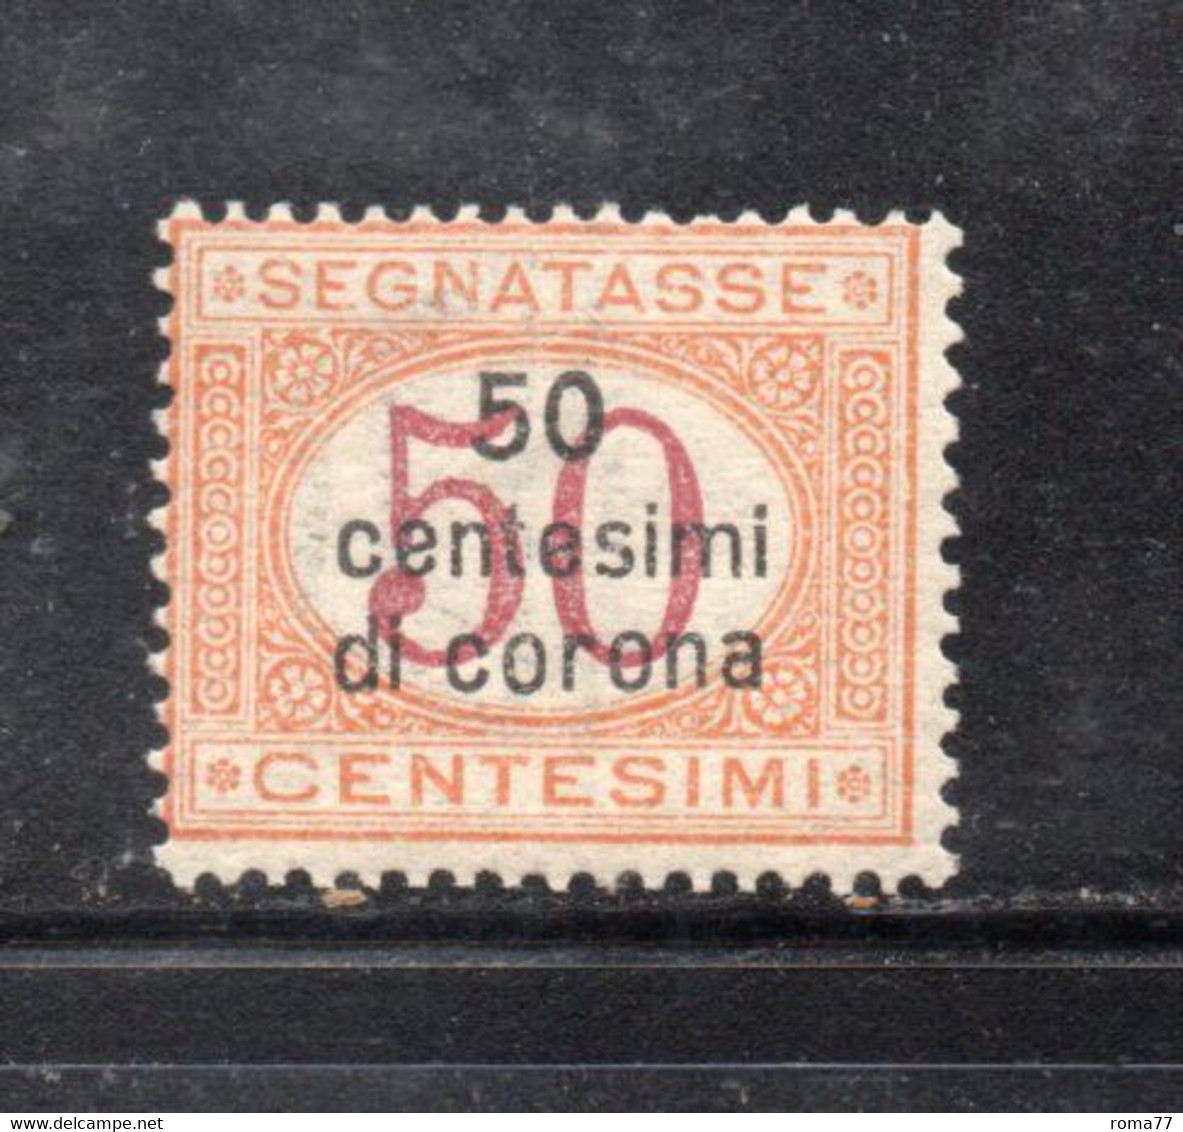 Y2274 - DALMAZIA 1922, Segnatasse Il N. 1  Con Gomma Integra  ***  MNH - Dalmatië